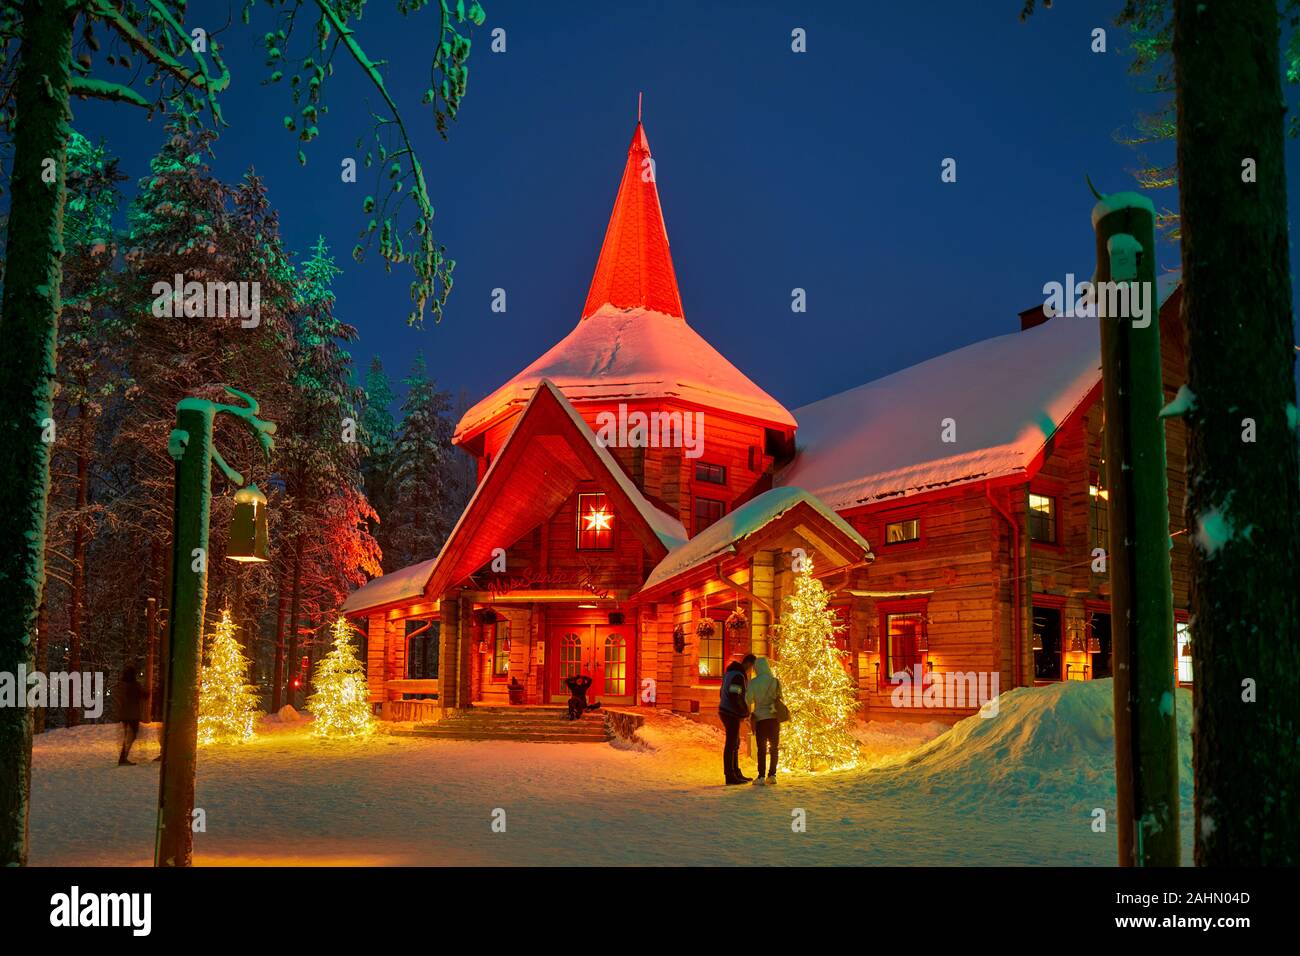 Finnische Rovaniemi eine Stadt in Finnland und der Region Lappland, Santa Claus Village Frau Claus Weihnachten Hütte im Wald bei Nacht Stockfoto